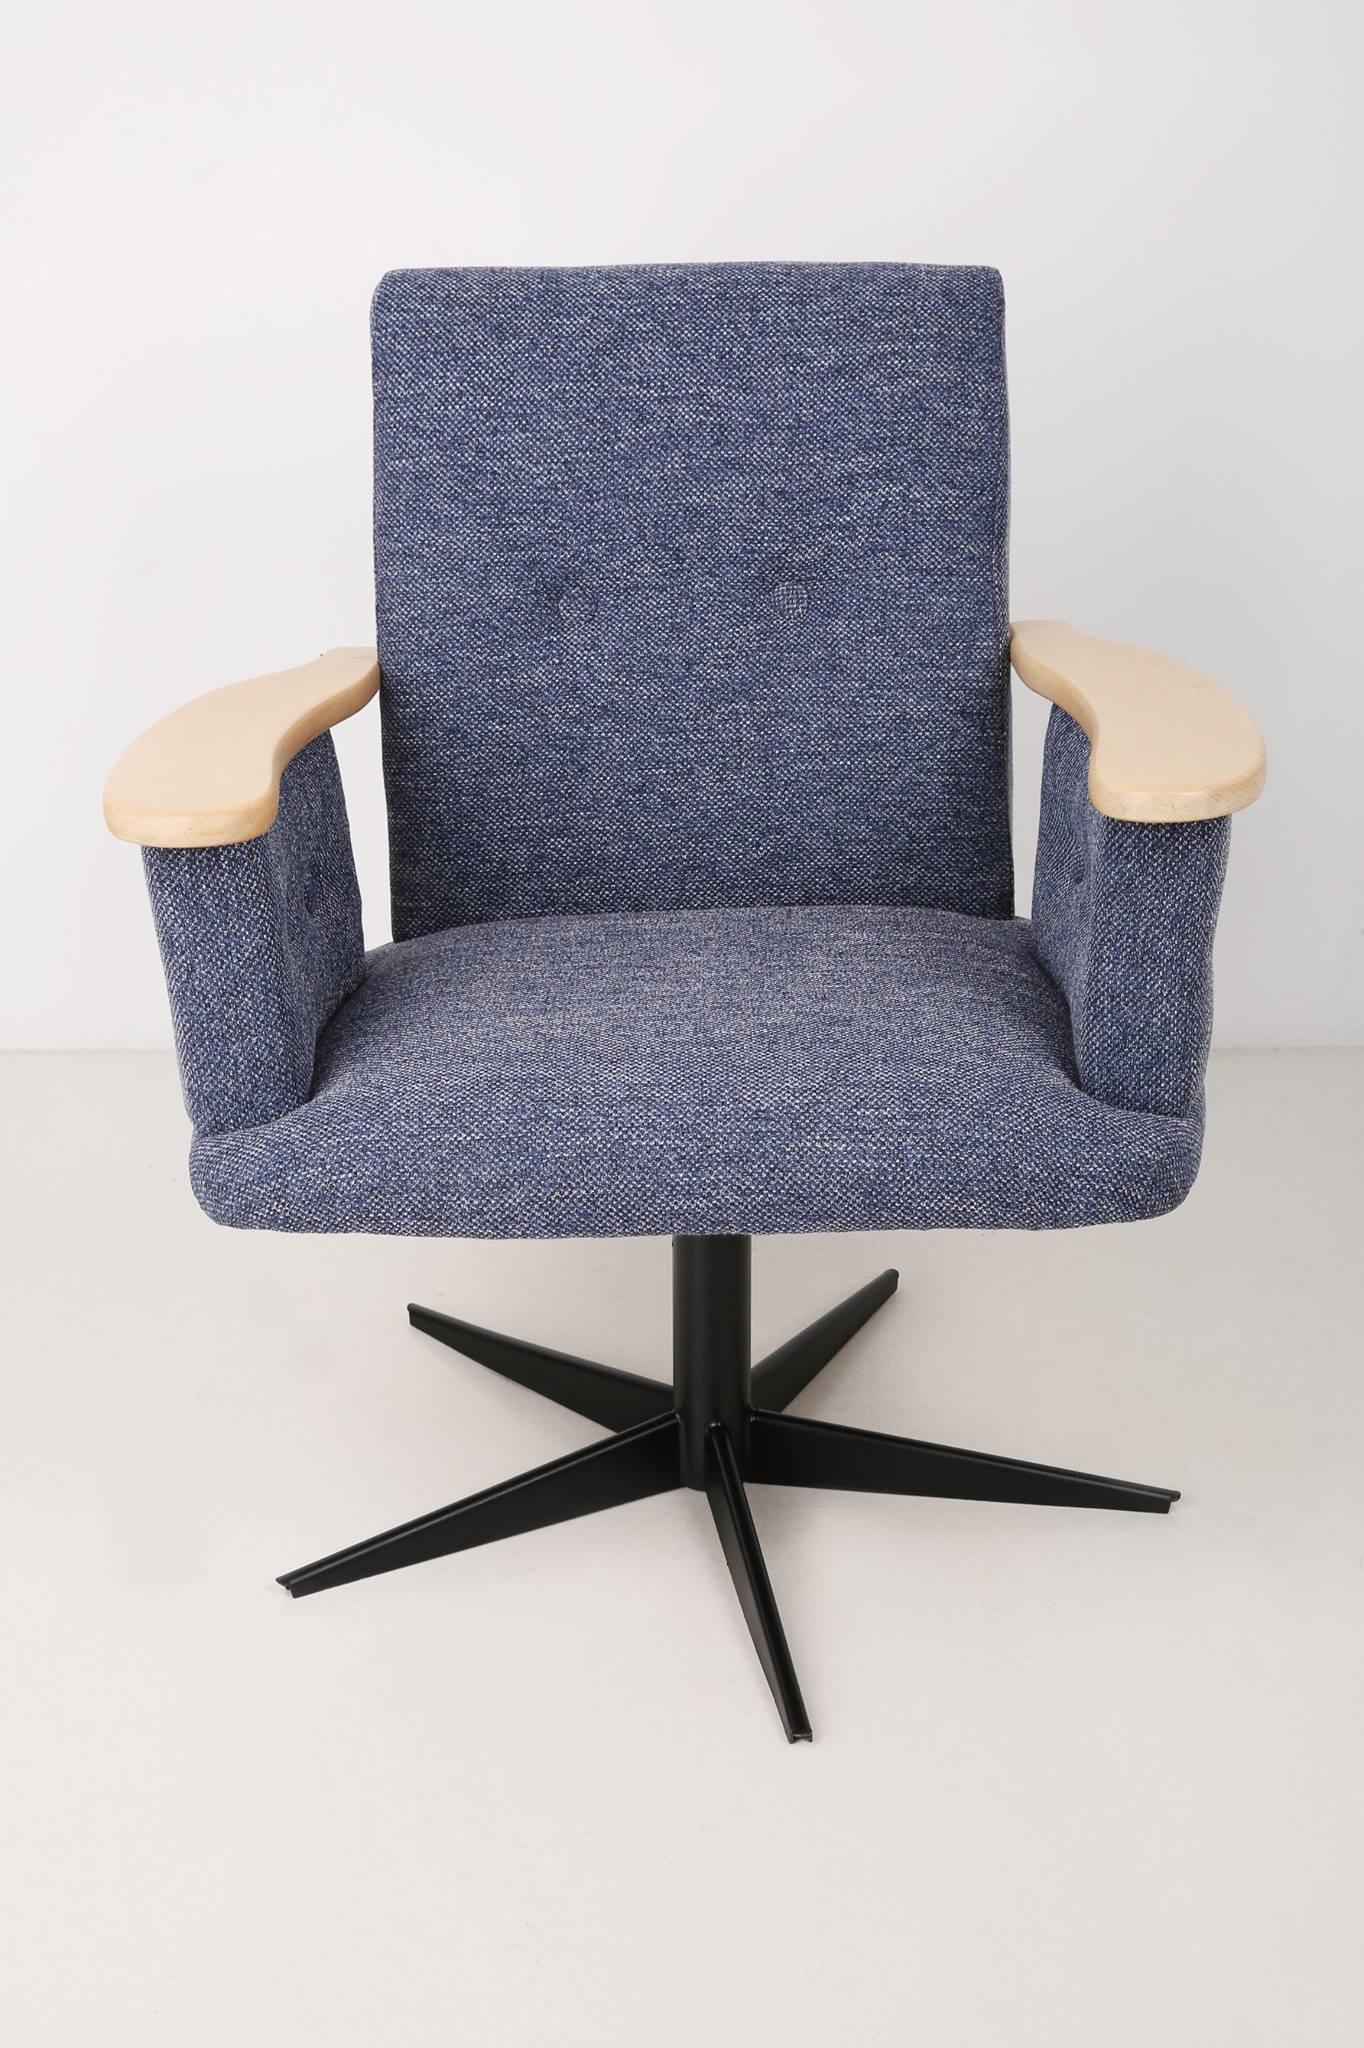 Drehsessel mit drehbarer Lehne aus den 1960er Jahren, hergestellt in der siedischen Möbelfabrik in Swiebodzin – ein komplett originaler und einzigartiger Sessel.

Der Sessel hat eine umfassende Renovierung durch durchgeführt:
- Metallelemente